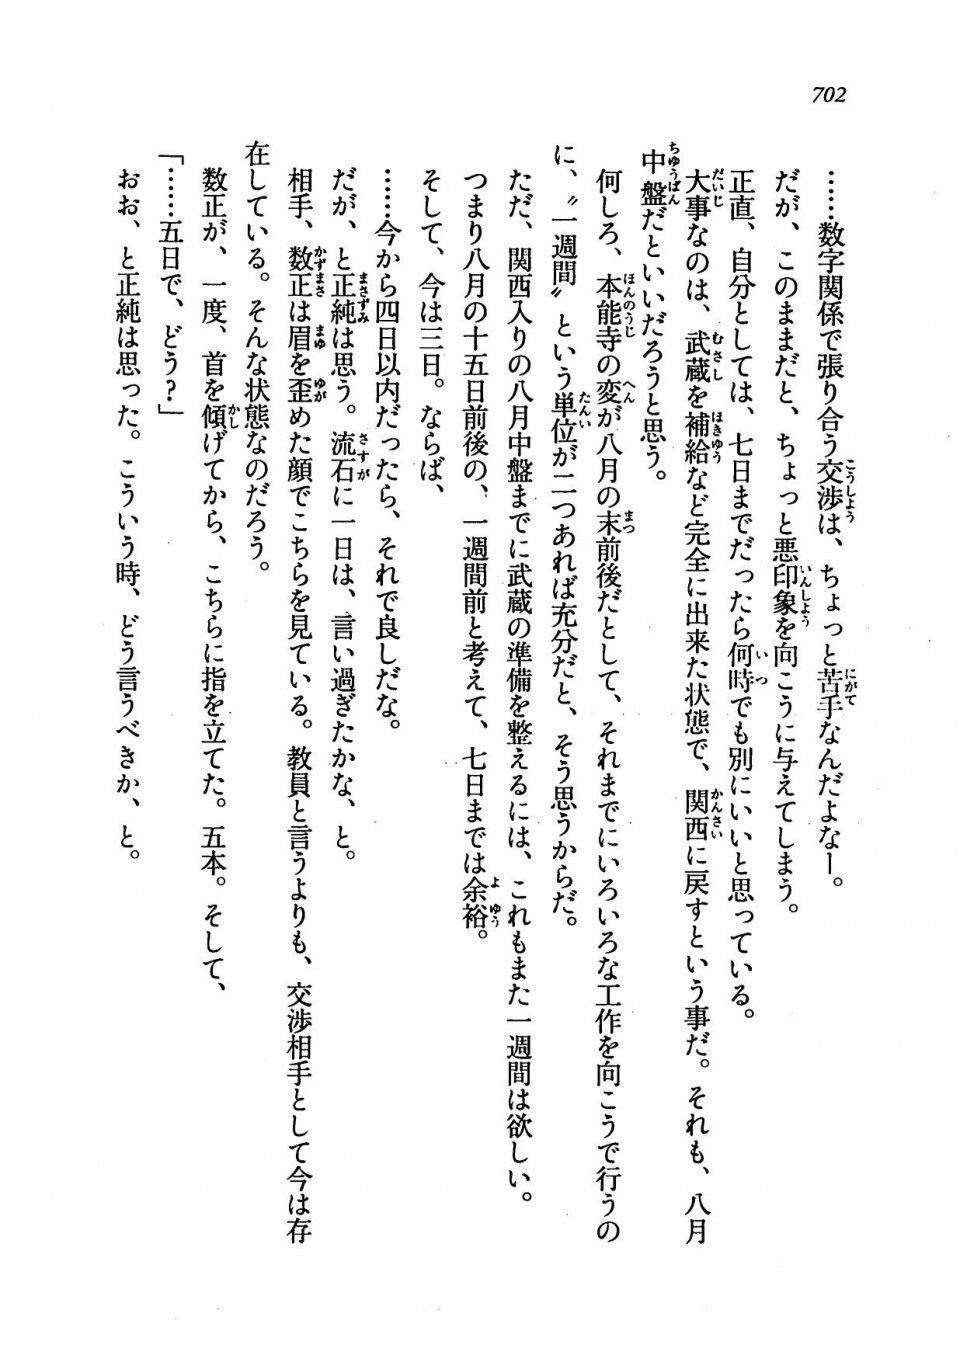 Kyoukai Senjou no Horizon LN Vol 19(8A) - Photo #702